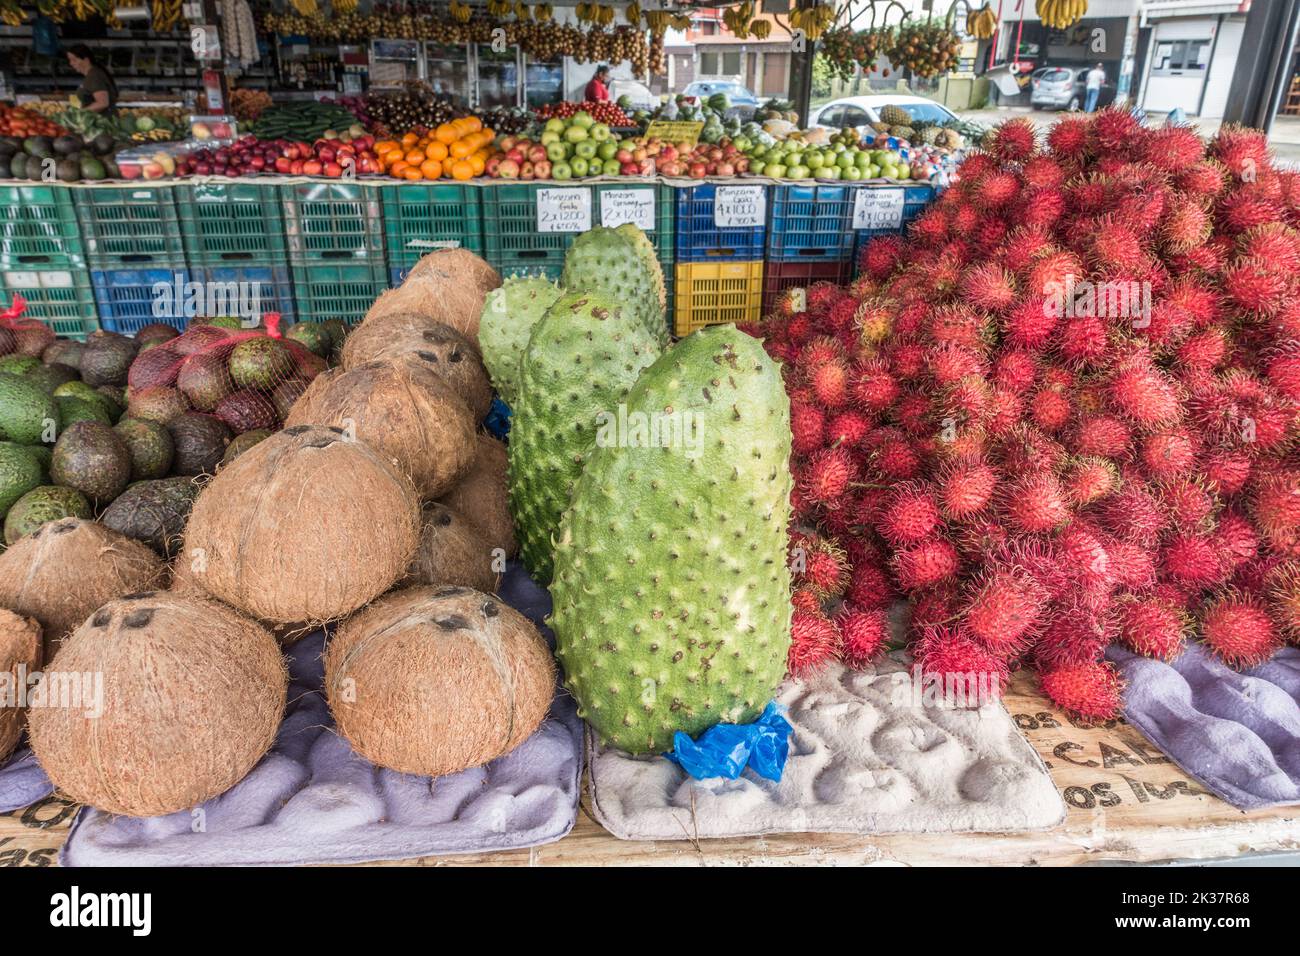 Le corosselet (Annona muricata), le ramboutan (Nephelium lappaceum) et les noix de coco (Cocos nucifera) et d'autres fruits à vendre sur un marché au Costa Rica. Banque D'Images